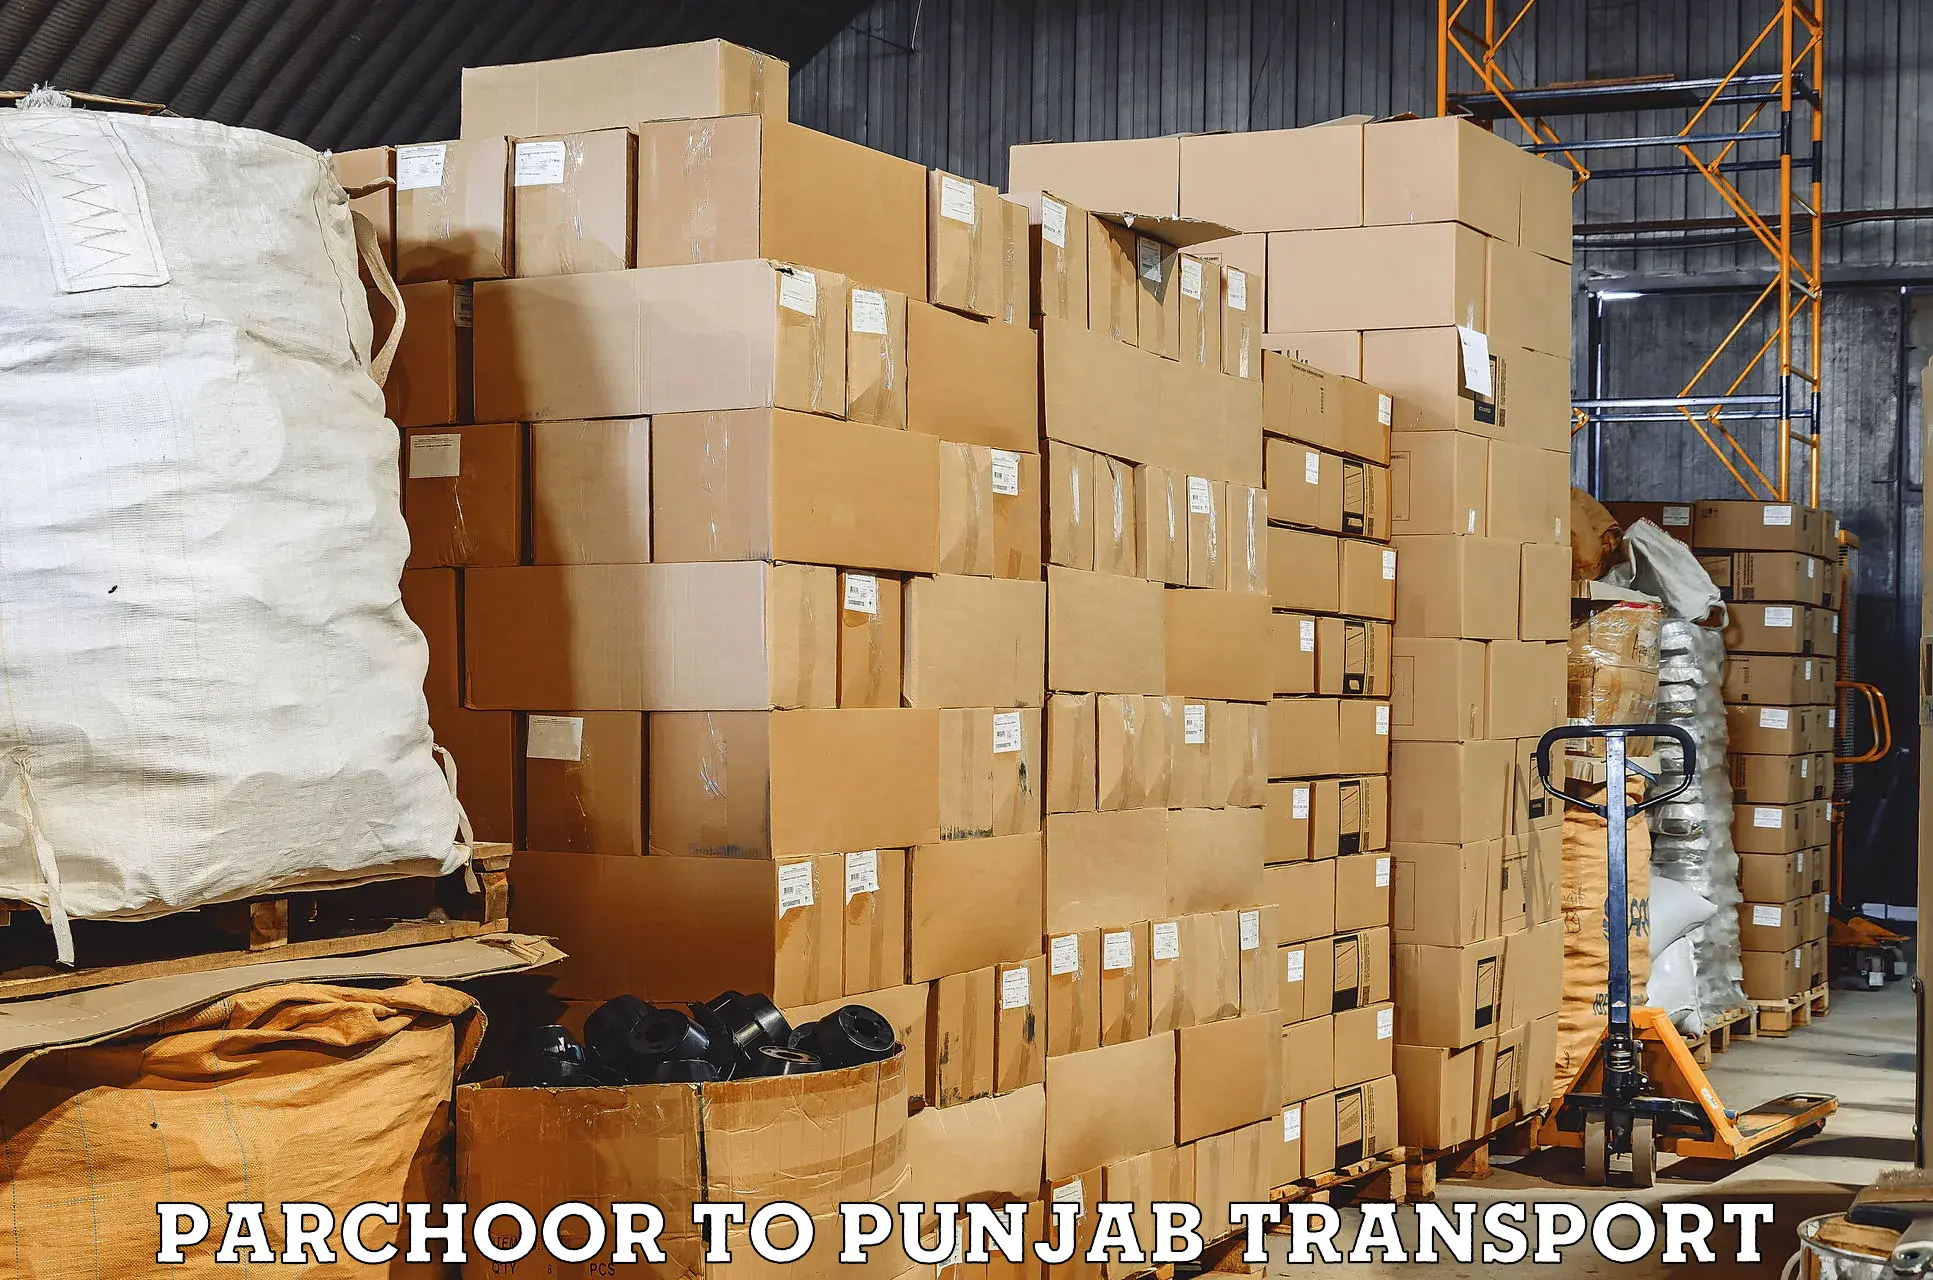 Road transport services Parchoor to Jalandhar